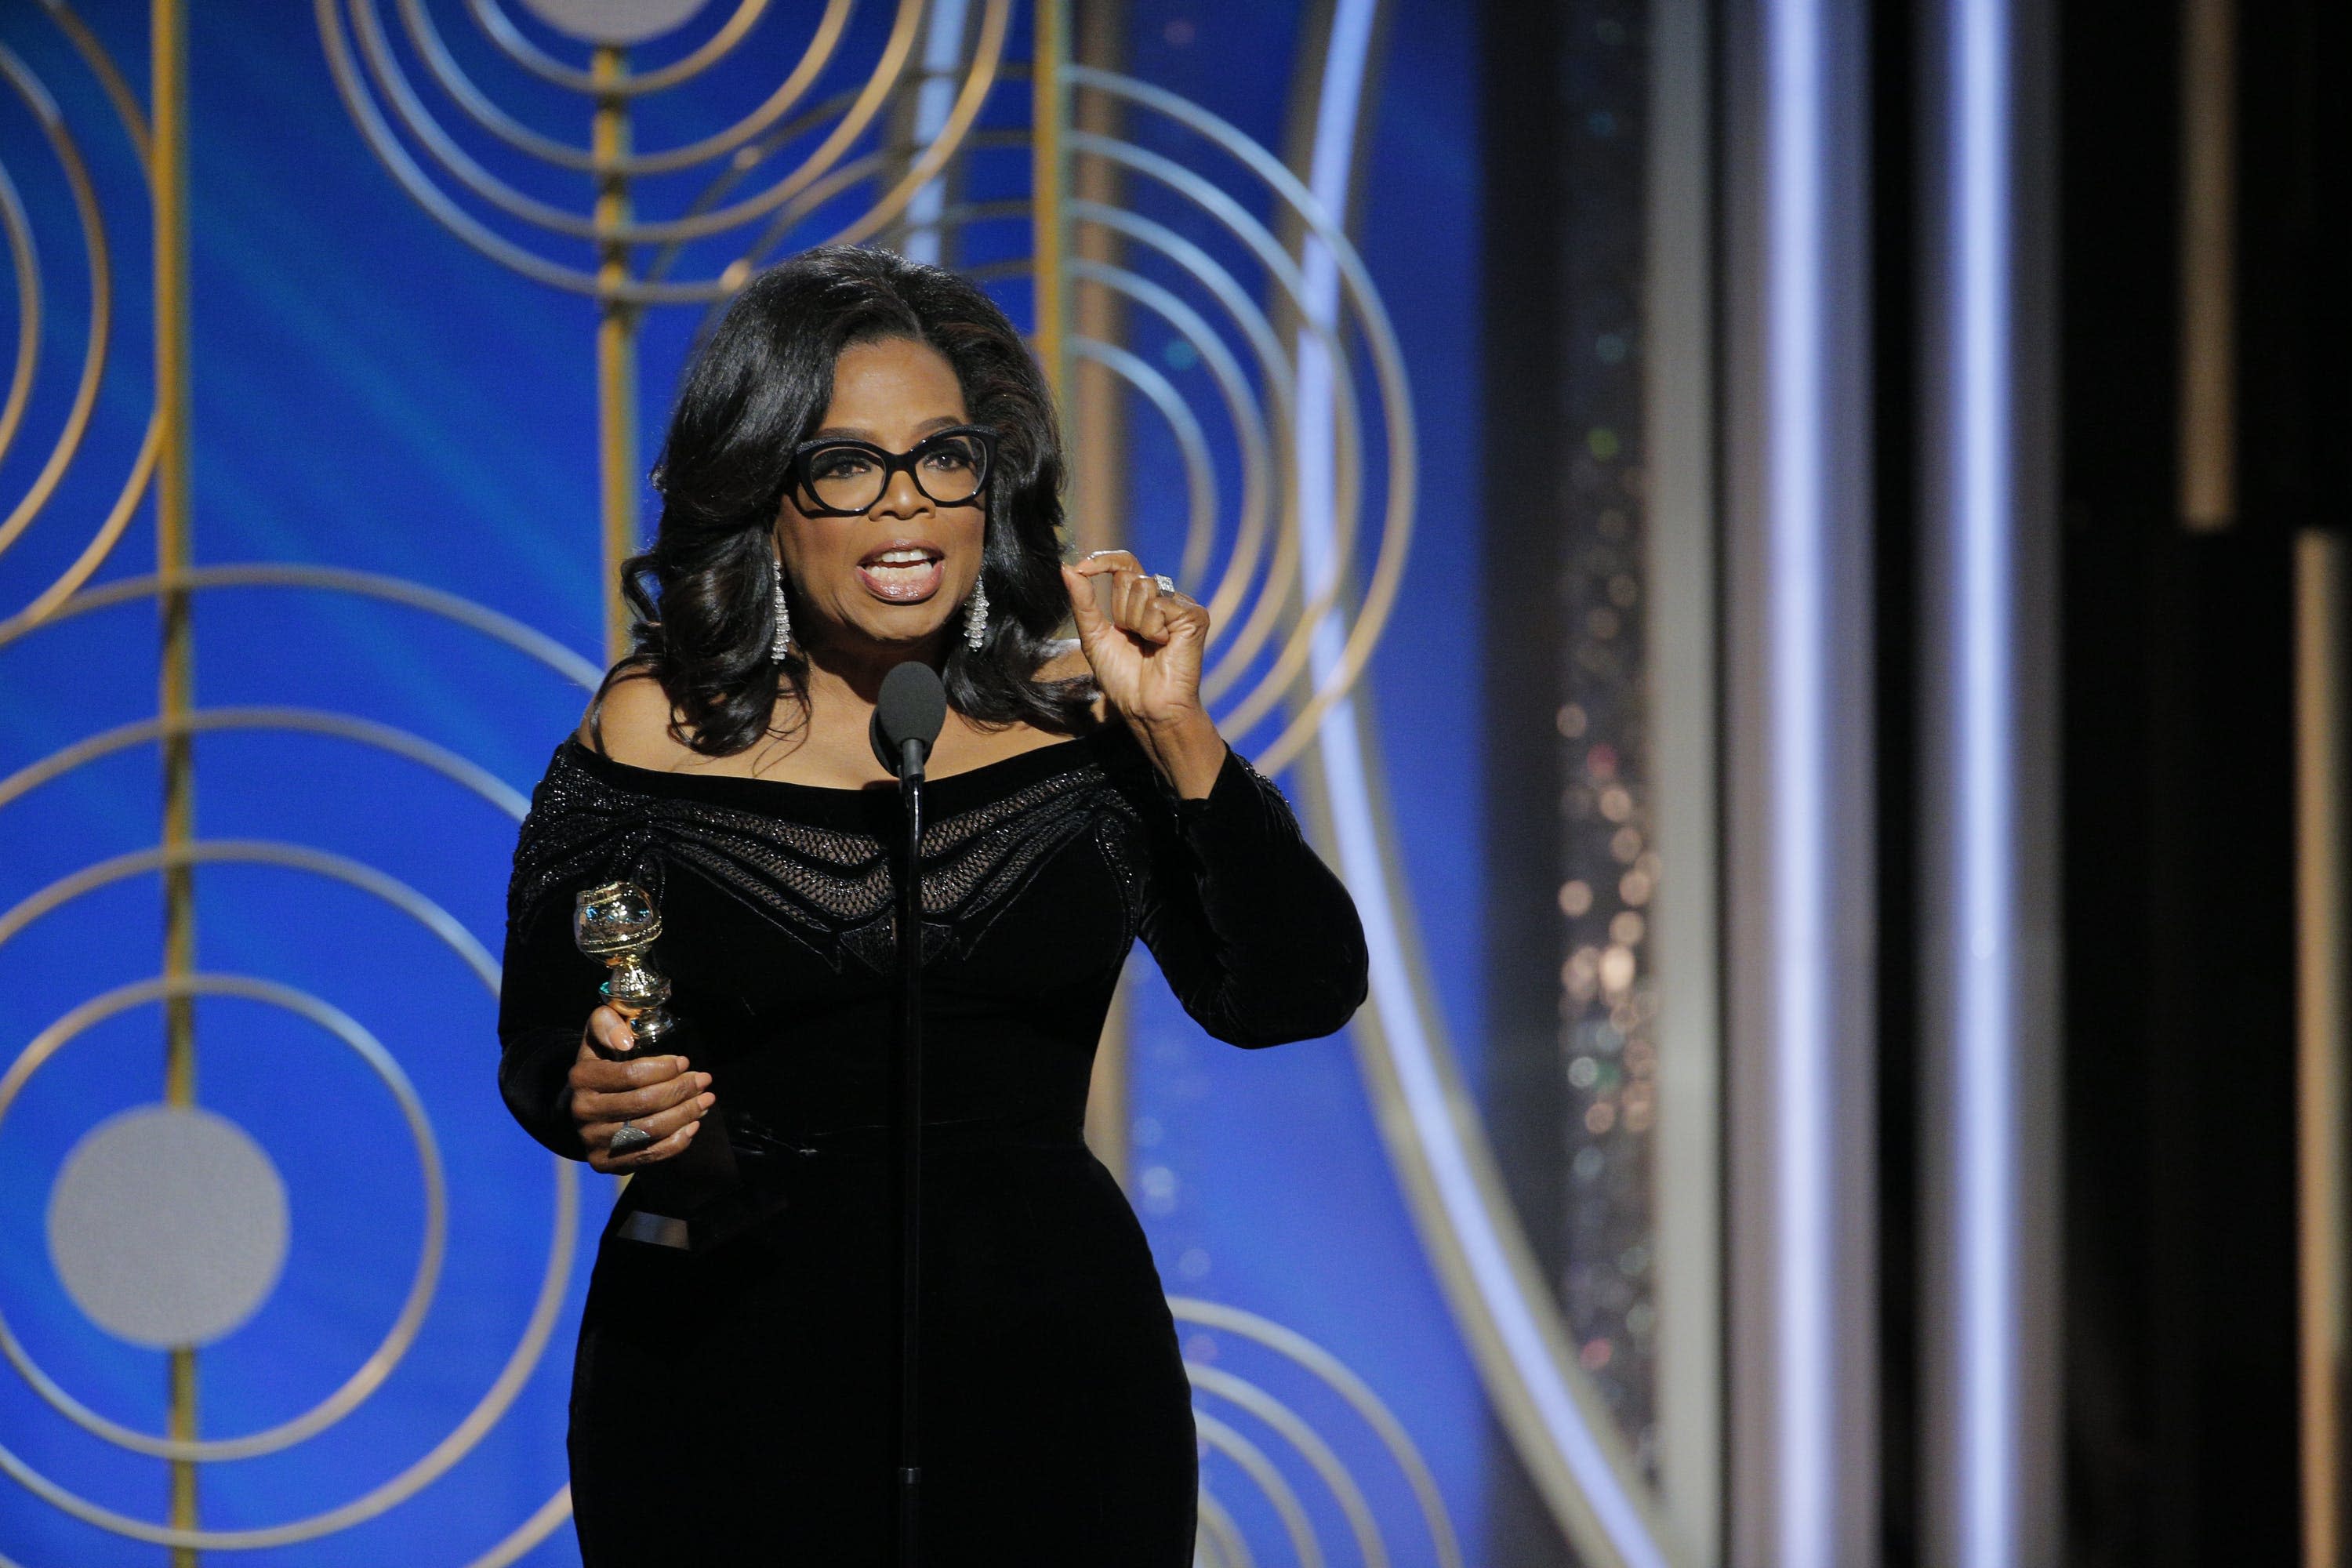 Oprah Winfreys Golden Globes 2018 Speech Was The Speech To End All Awards Show Speeches